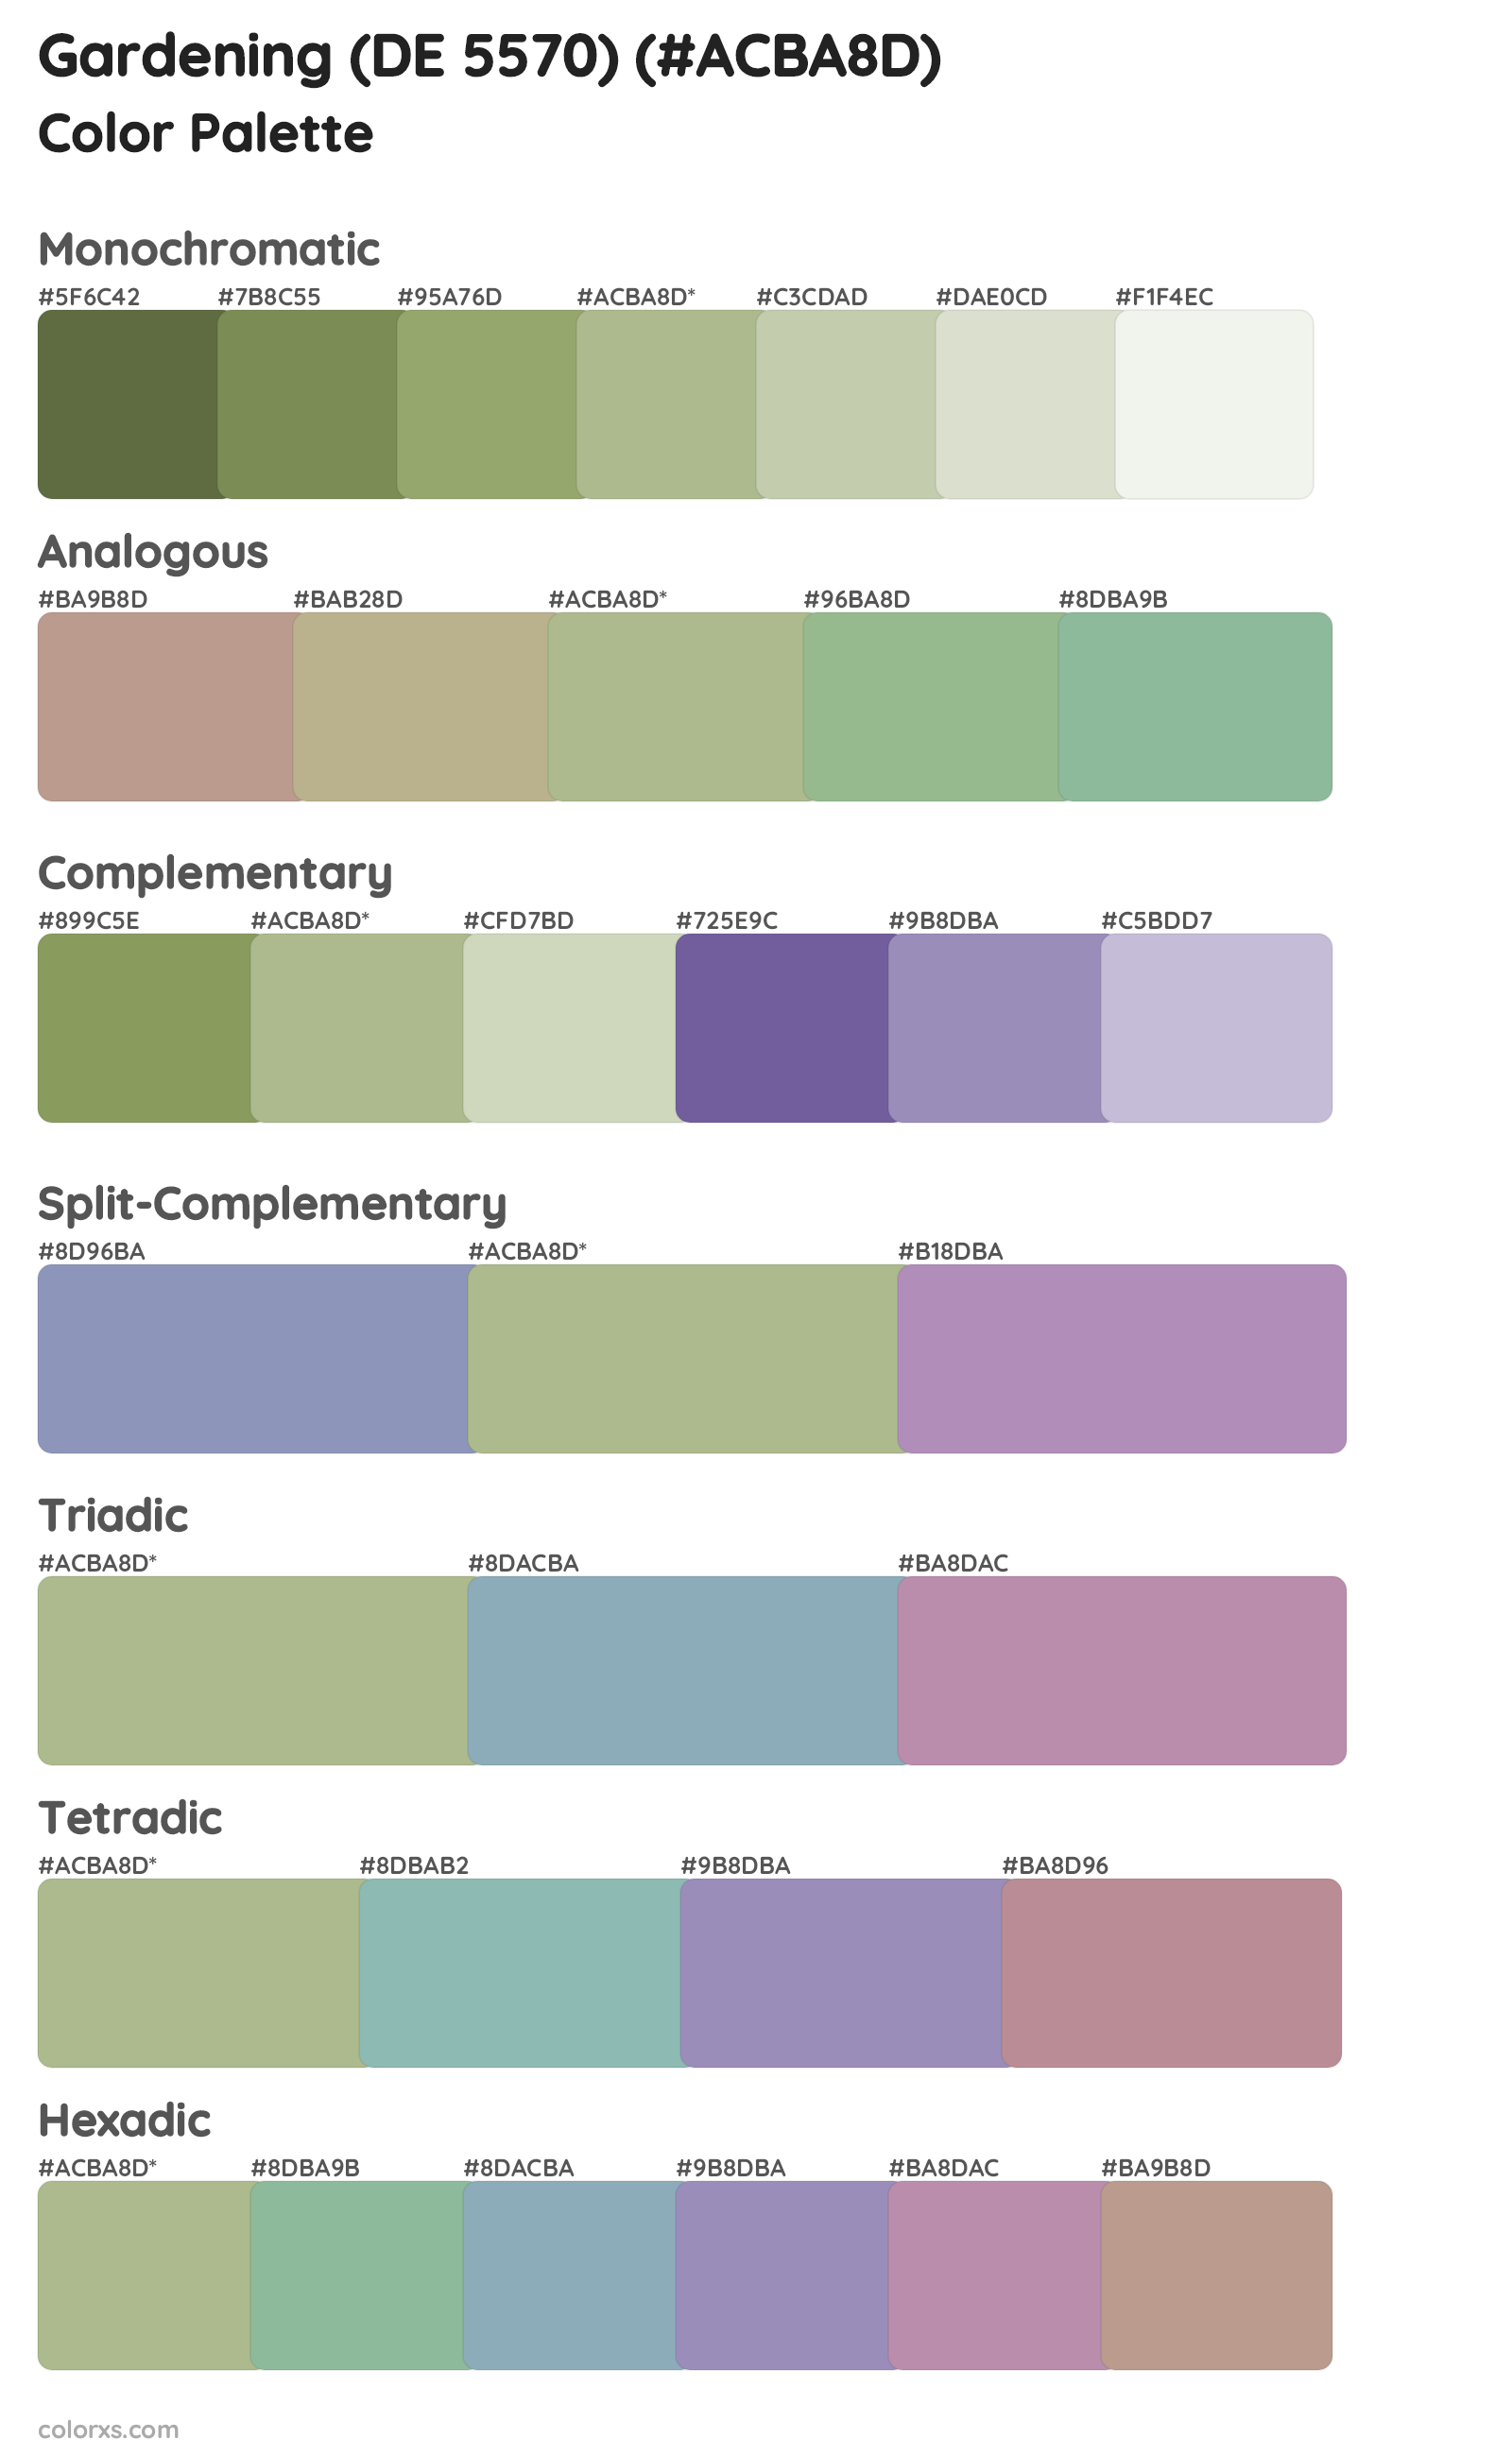 Gardening (DE 5570) Color Scheme Palettes